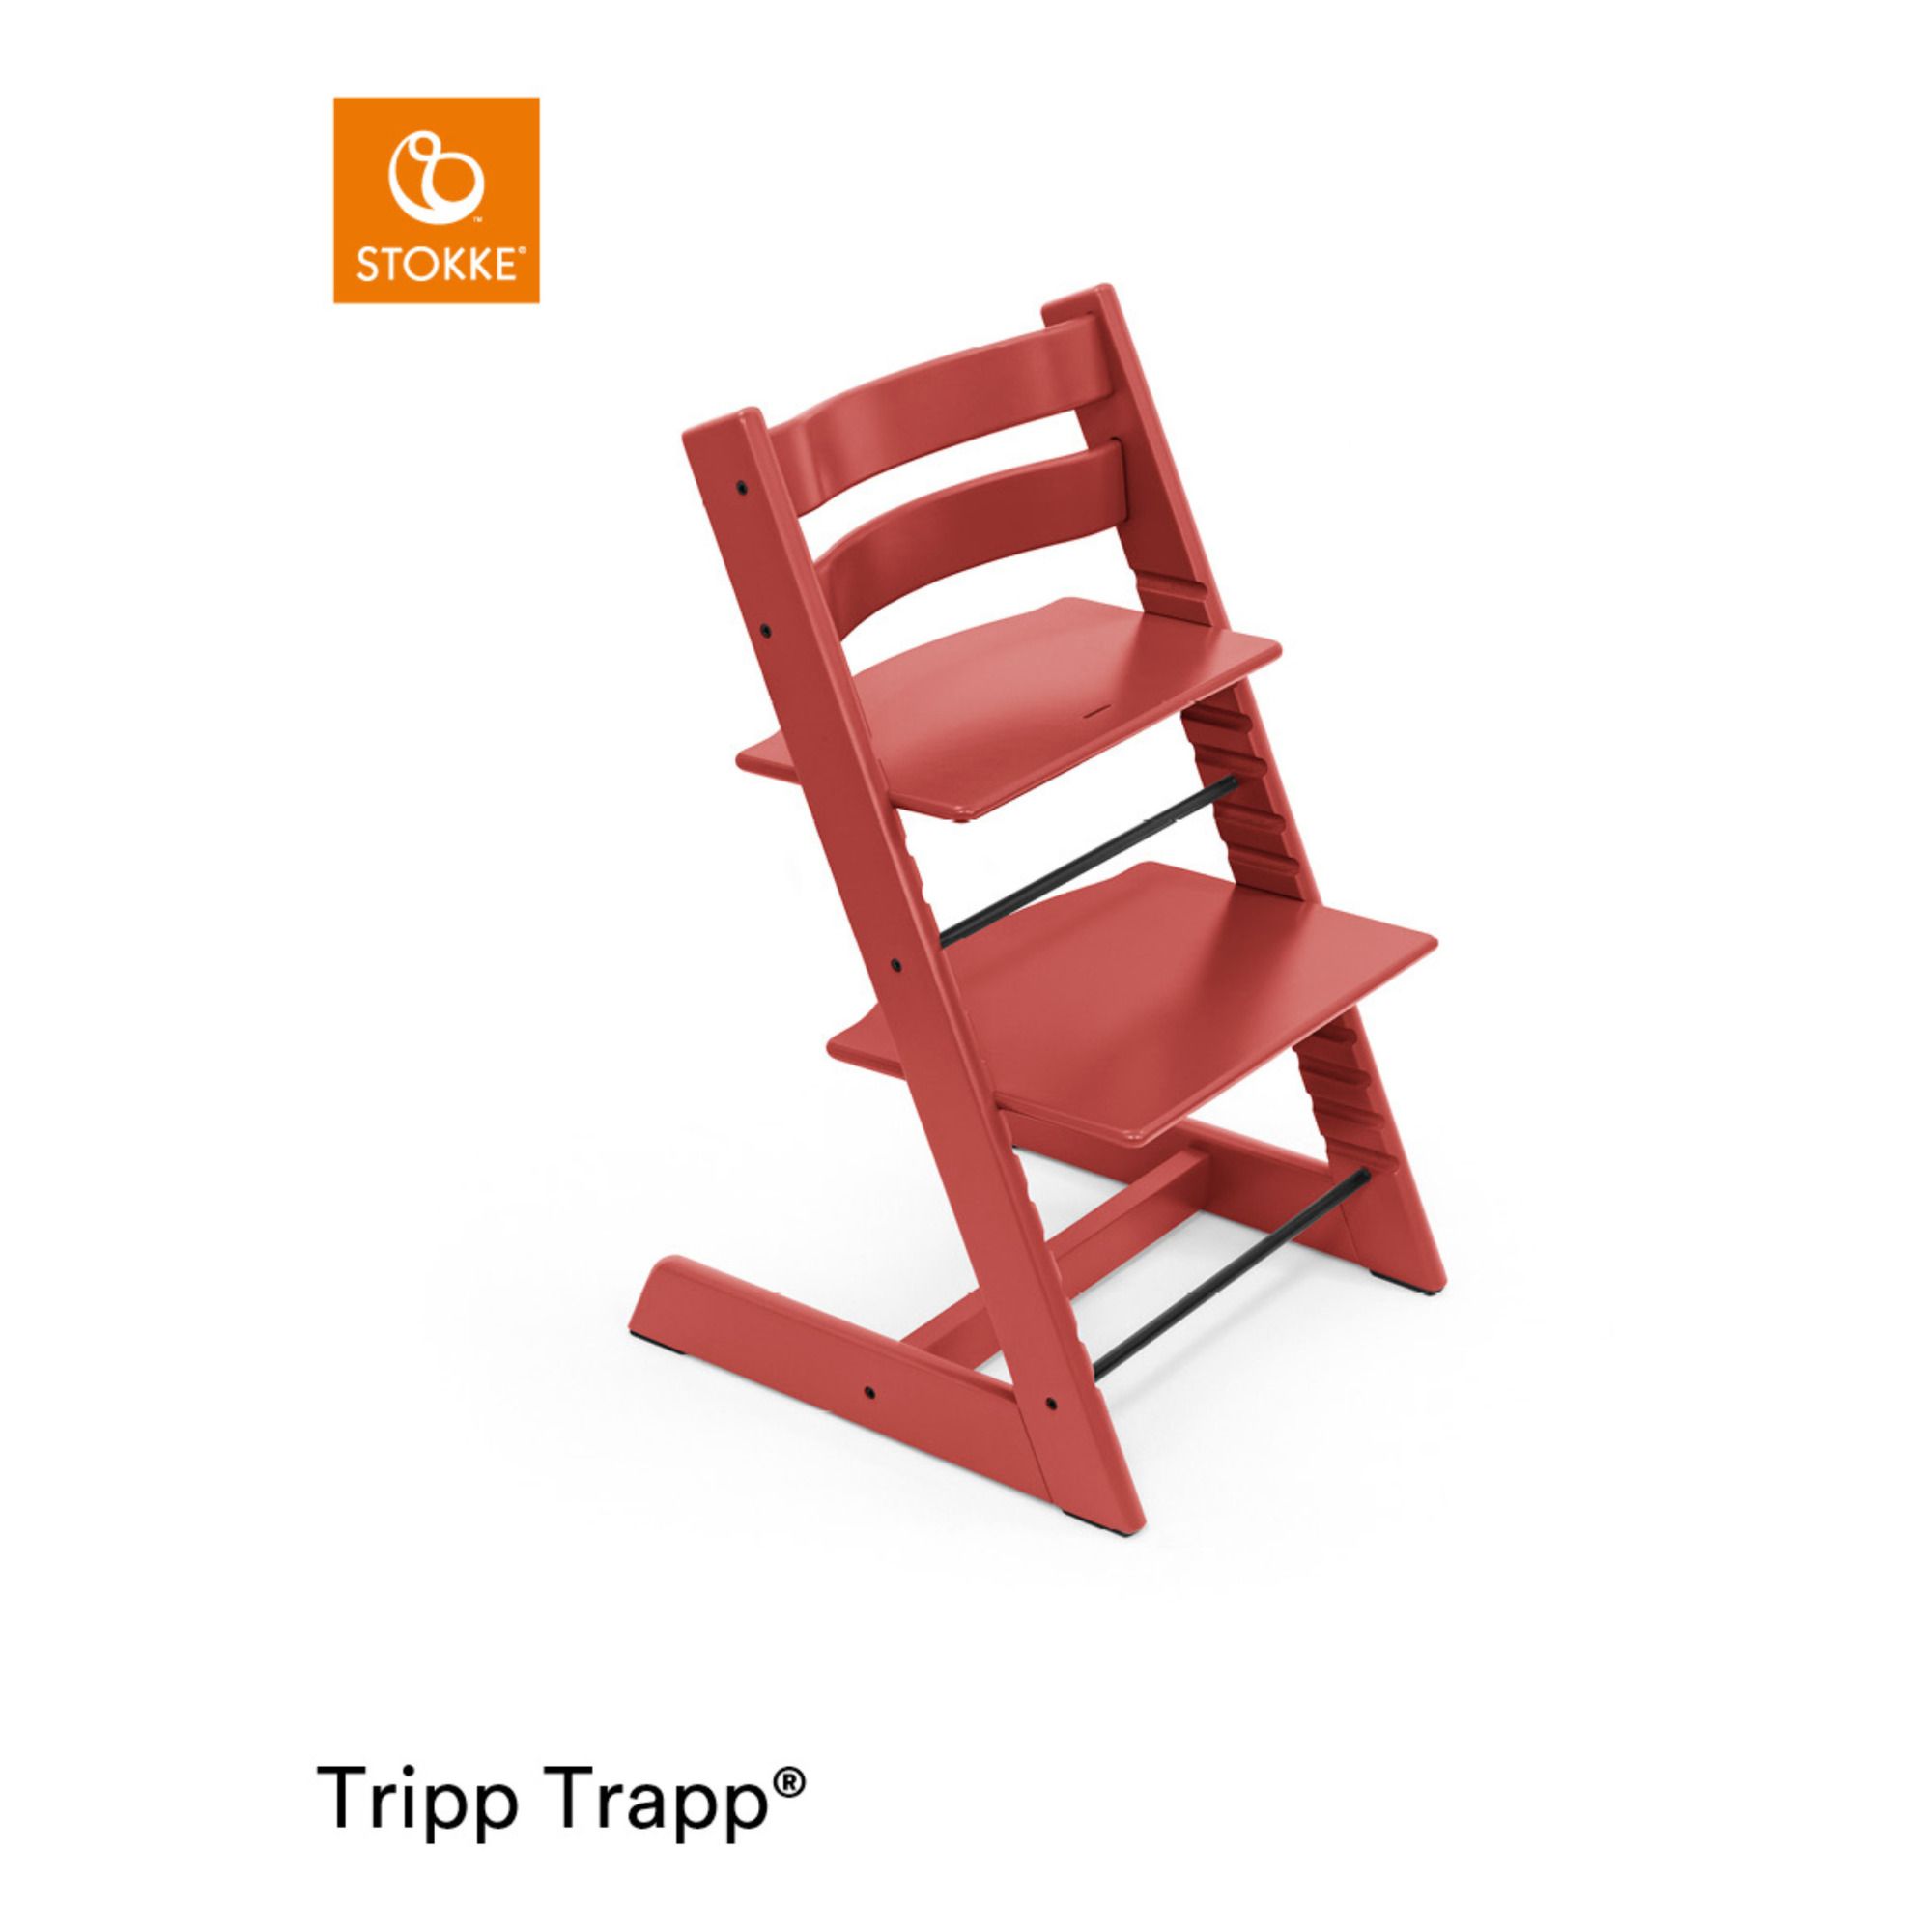 Chaise haute en hêtre Tripp Trapp® (Stokke®) - Image 1